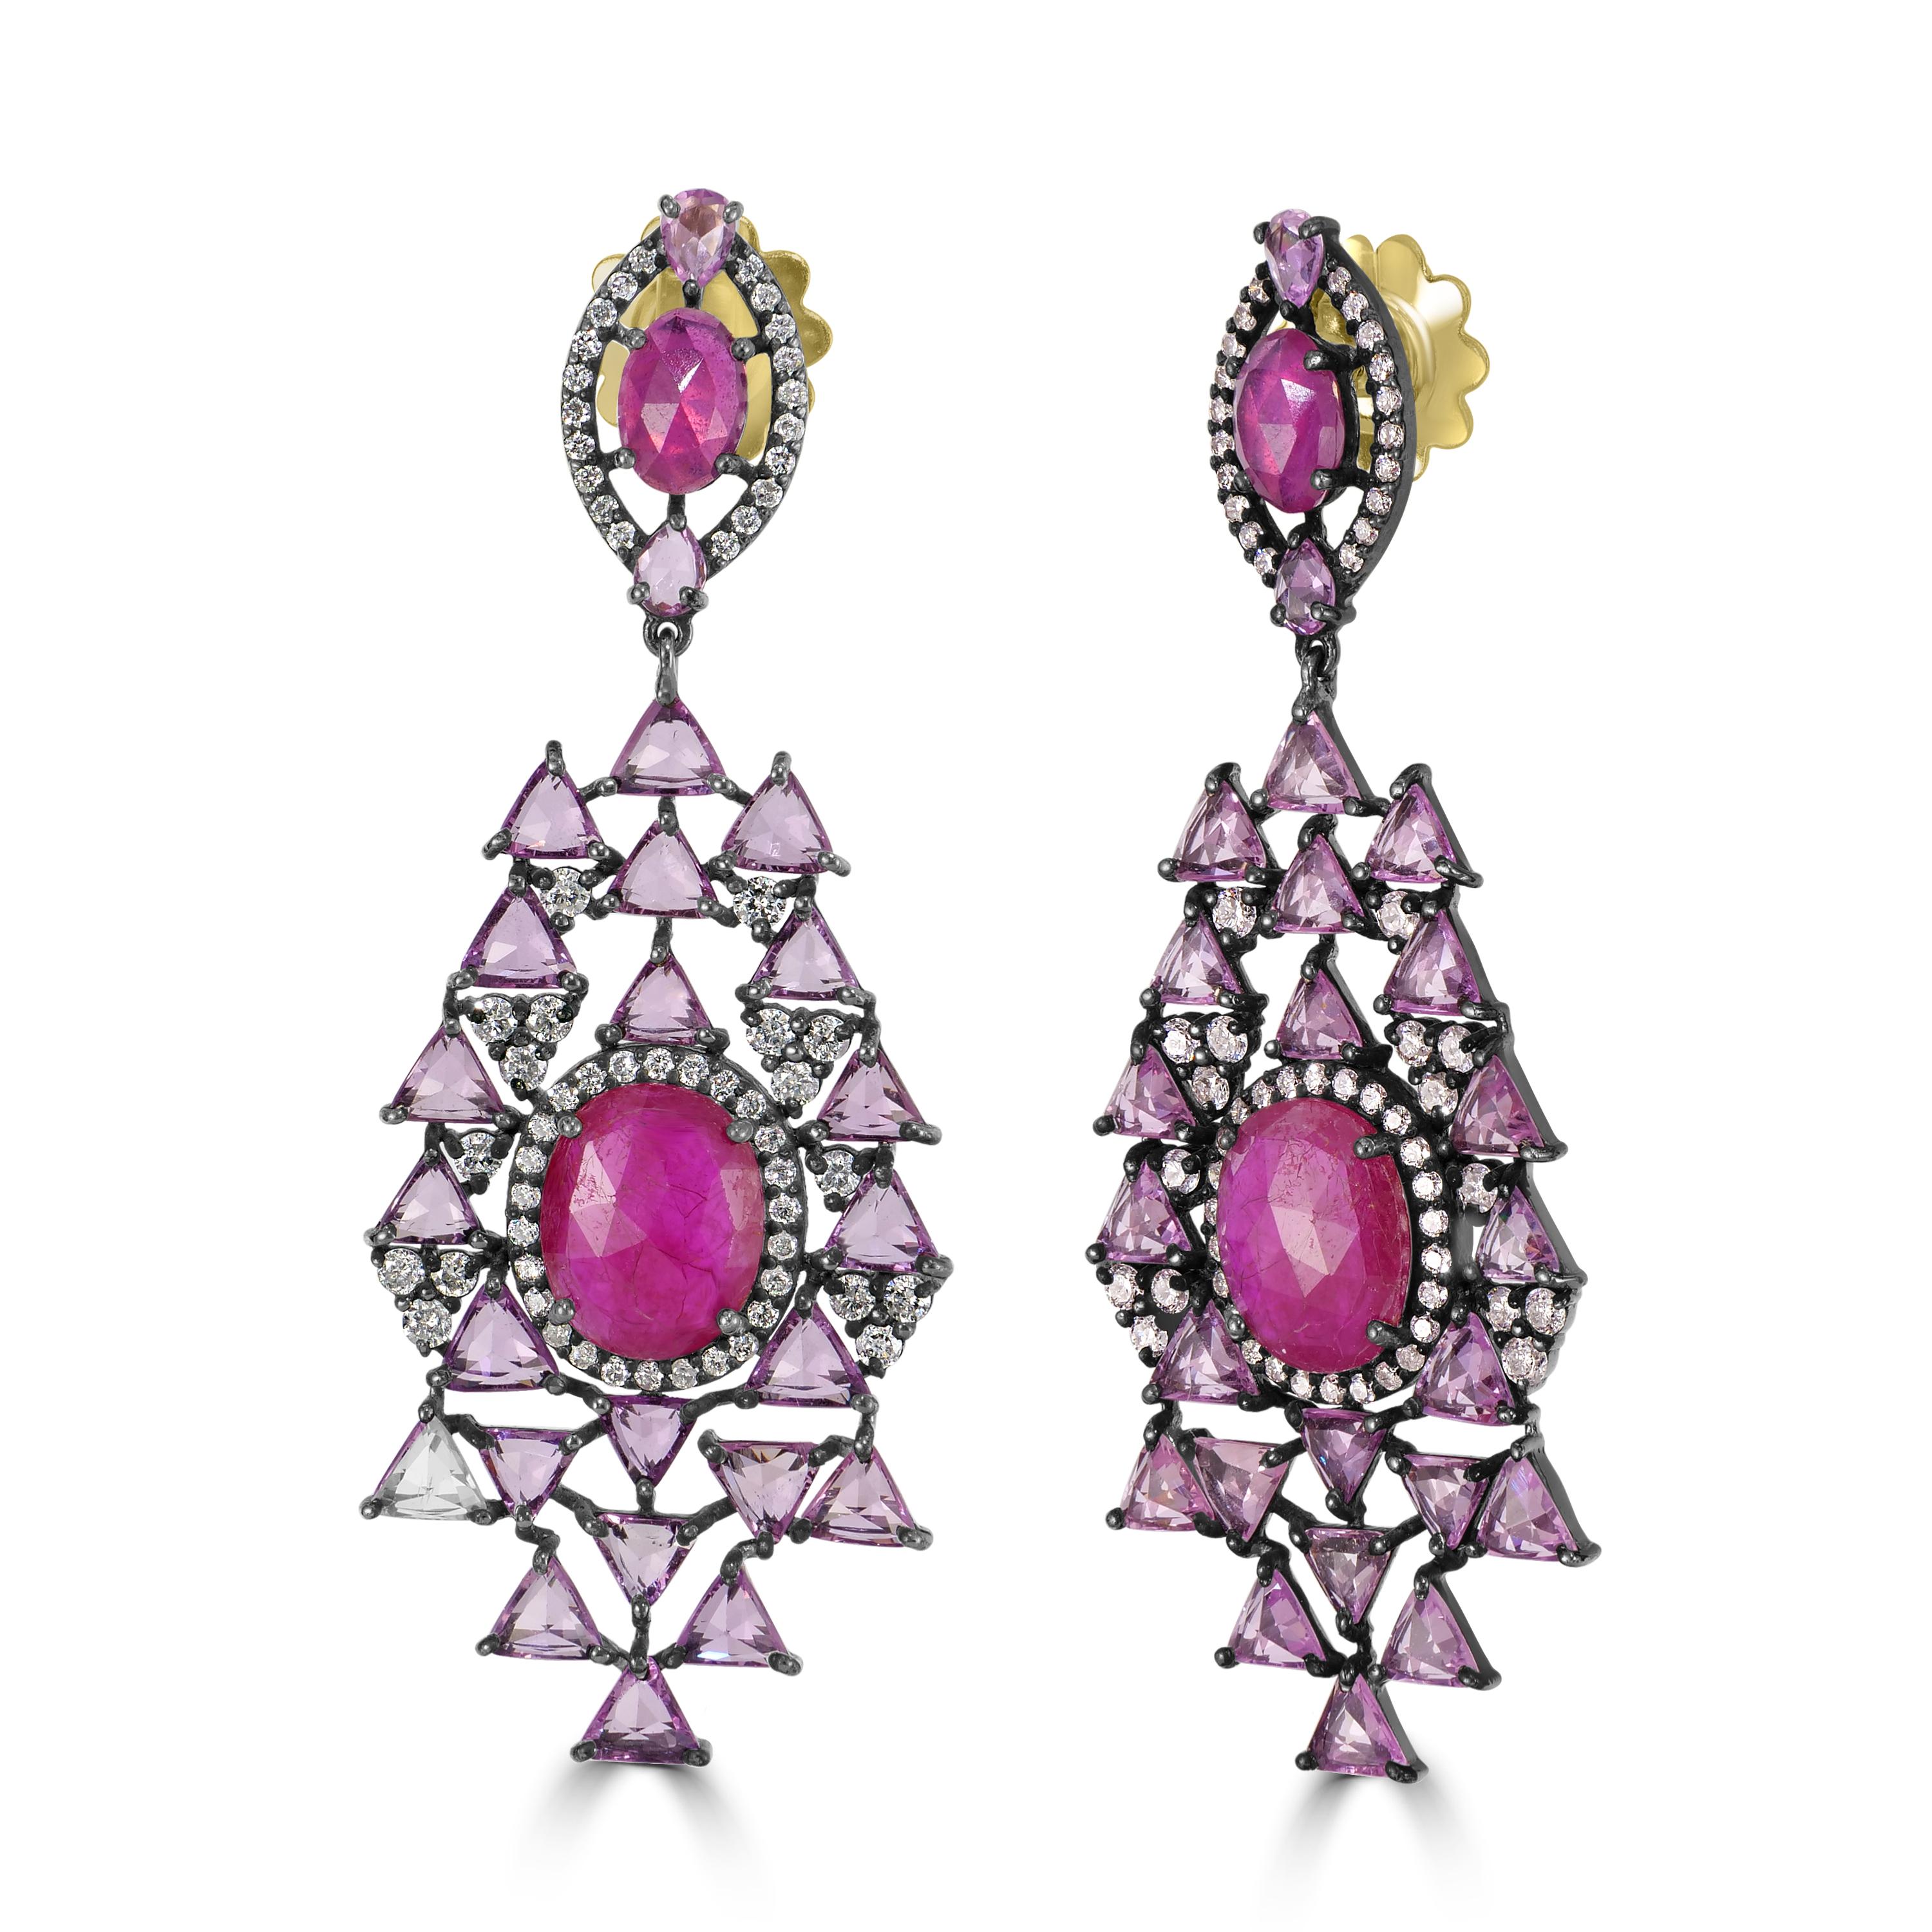 Wir stellen Ihnen unseren exquisiten viktorianischen 18,16 cttw. Ohrringe mit Rubin, rosa Saphir und Diamant, ein Meisterwerk von zeitloser Eleganz und Raffinesse.

Das Herzstück jedes Ohrrings ist ein faszinierender ovaler Rubin, der von einem Halo